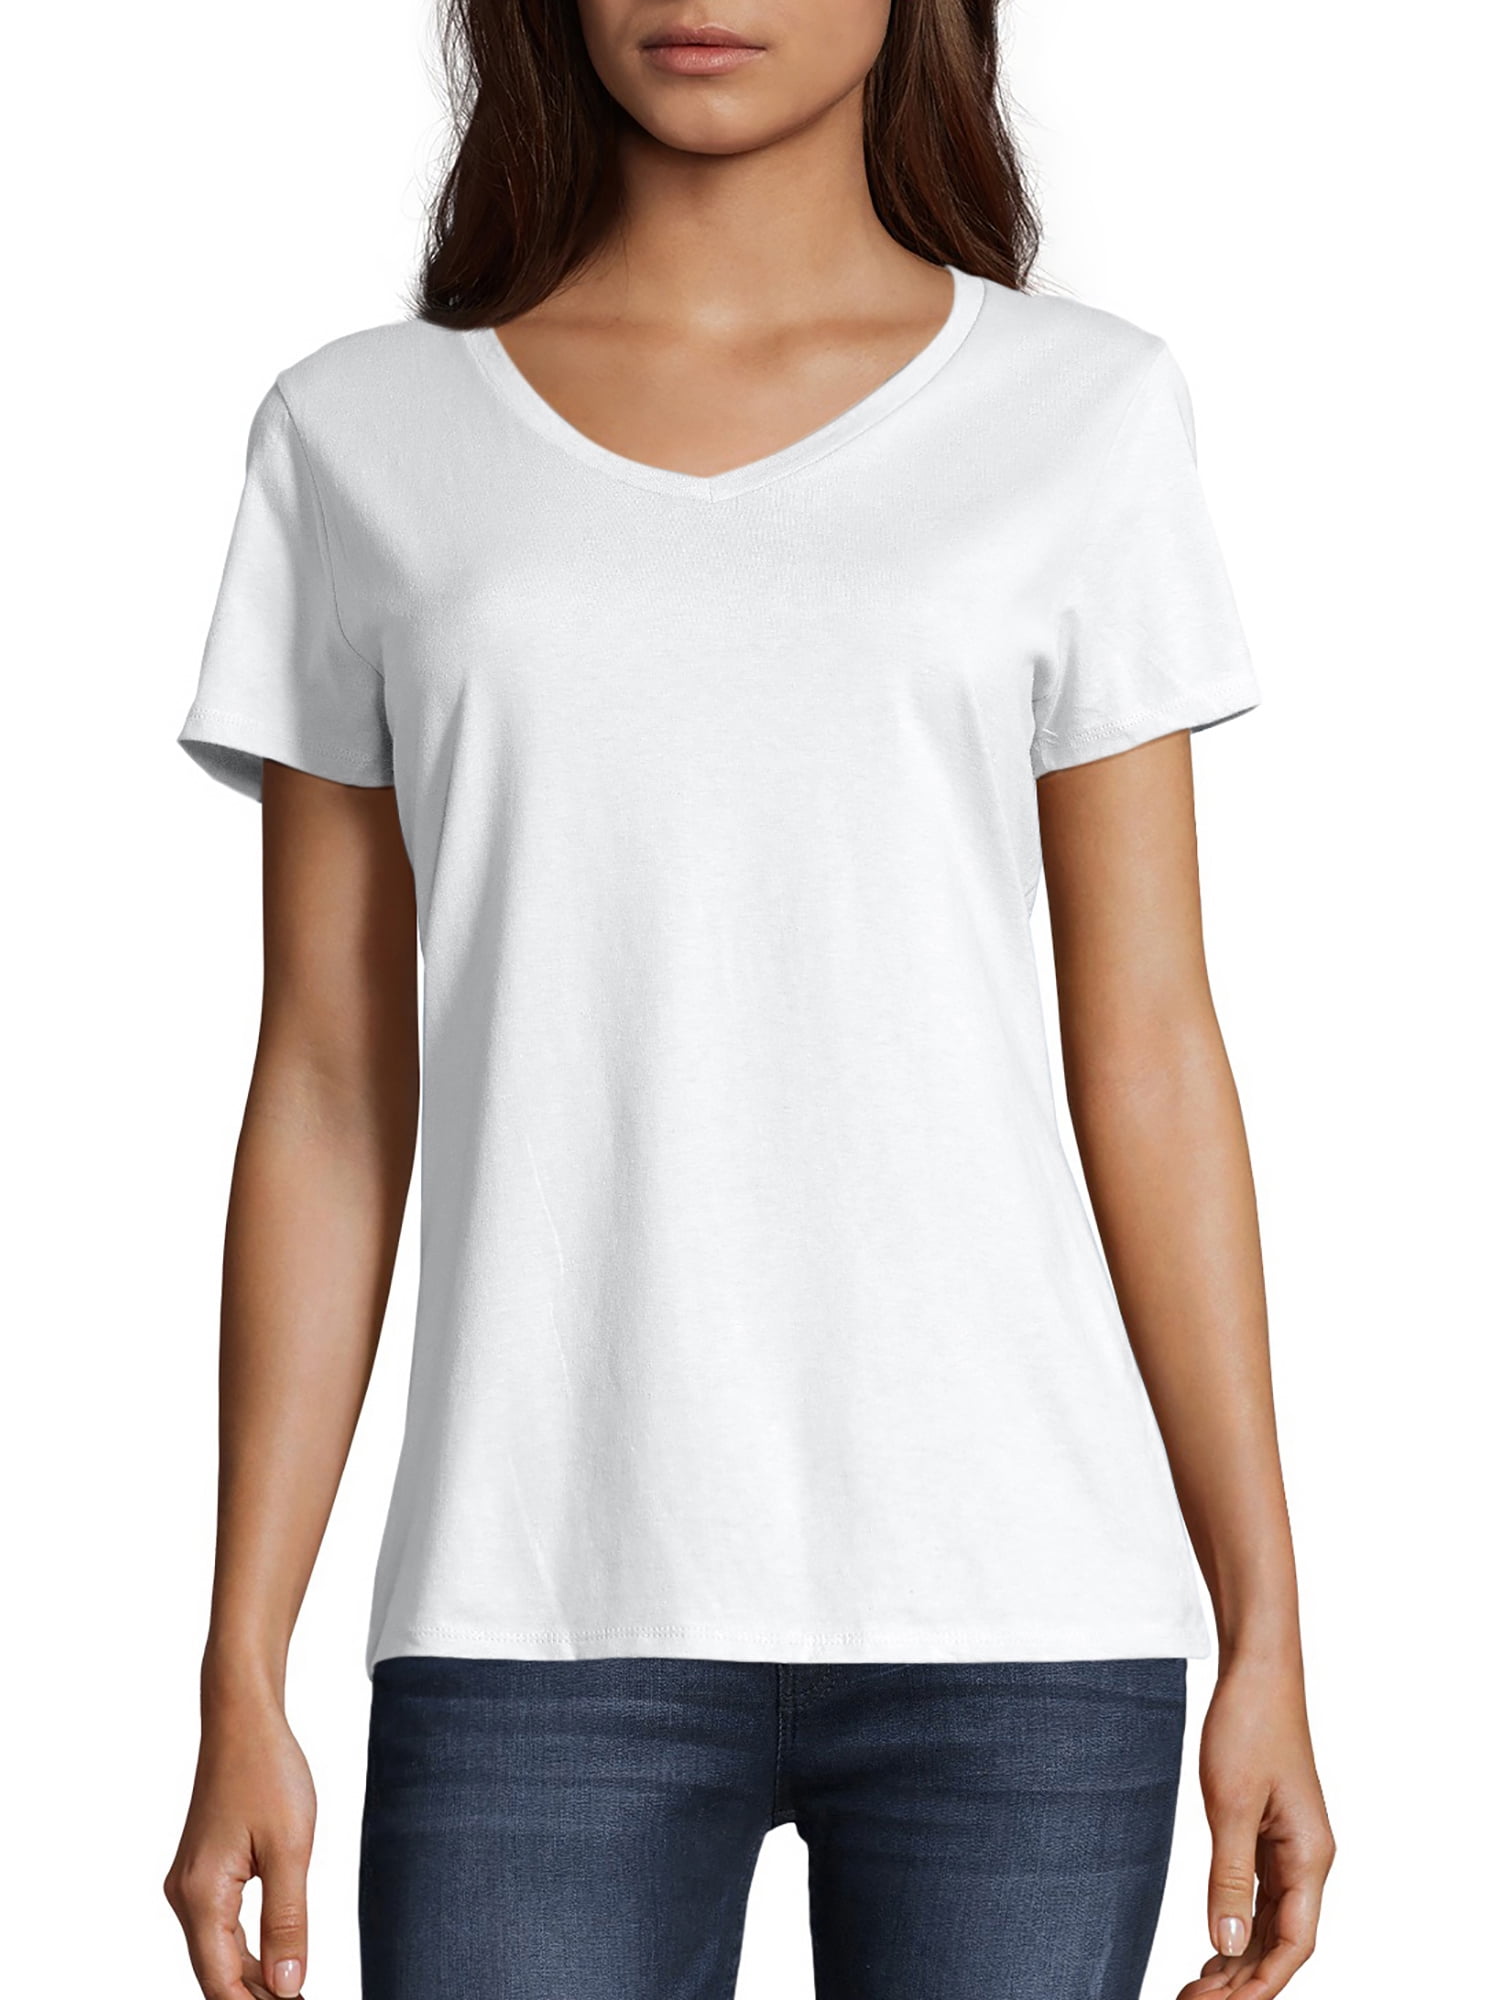 Hanes Women's Nano-T V-Neck T-Shirt White SIZE L --Ñ5-- 691167008123 | eBay